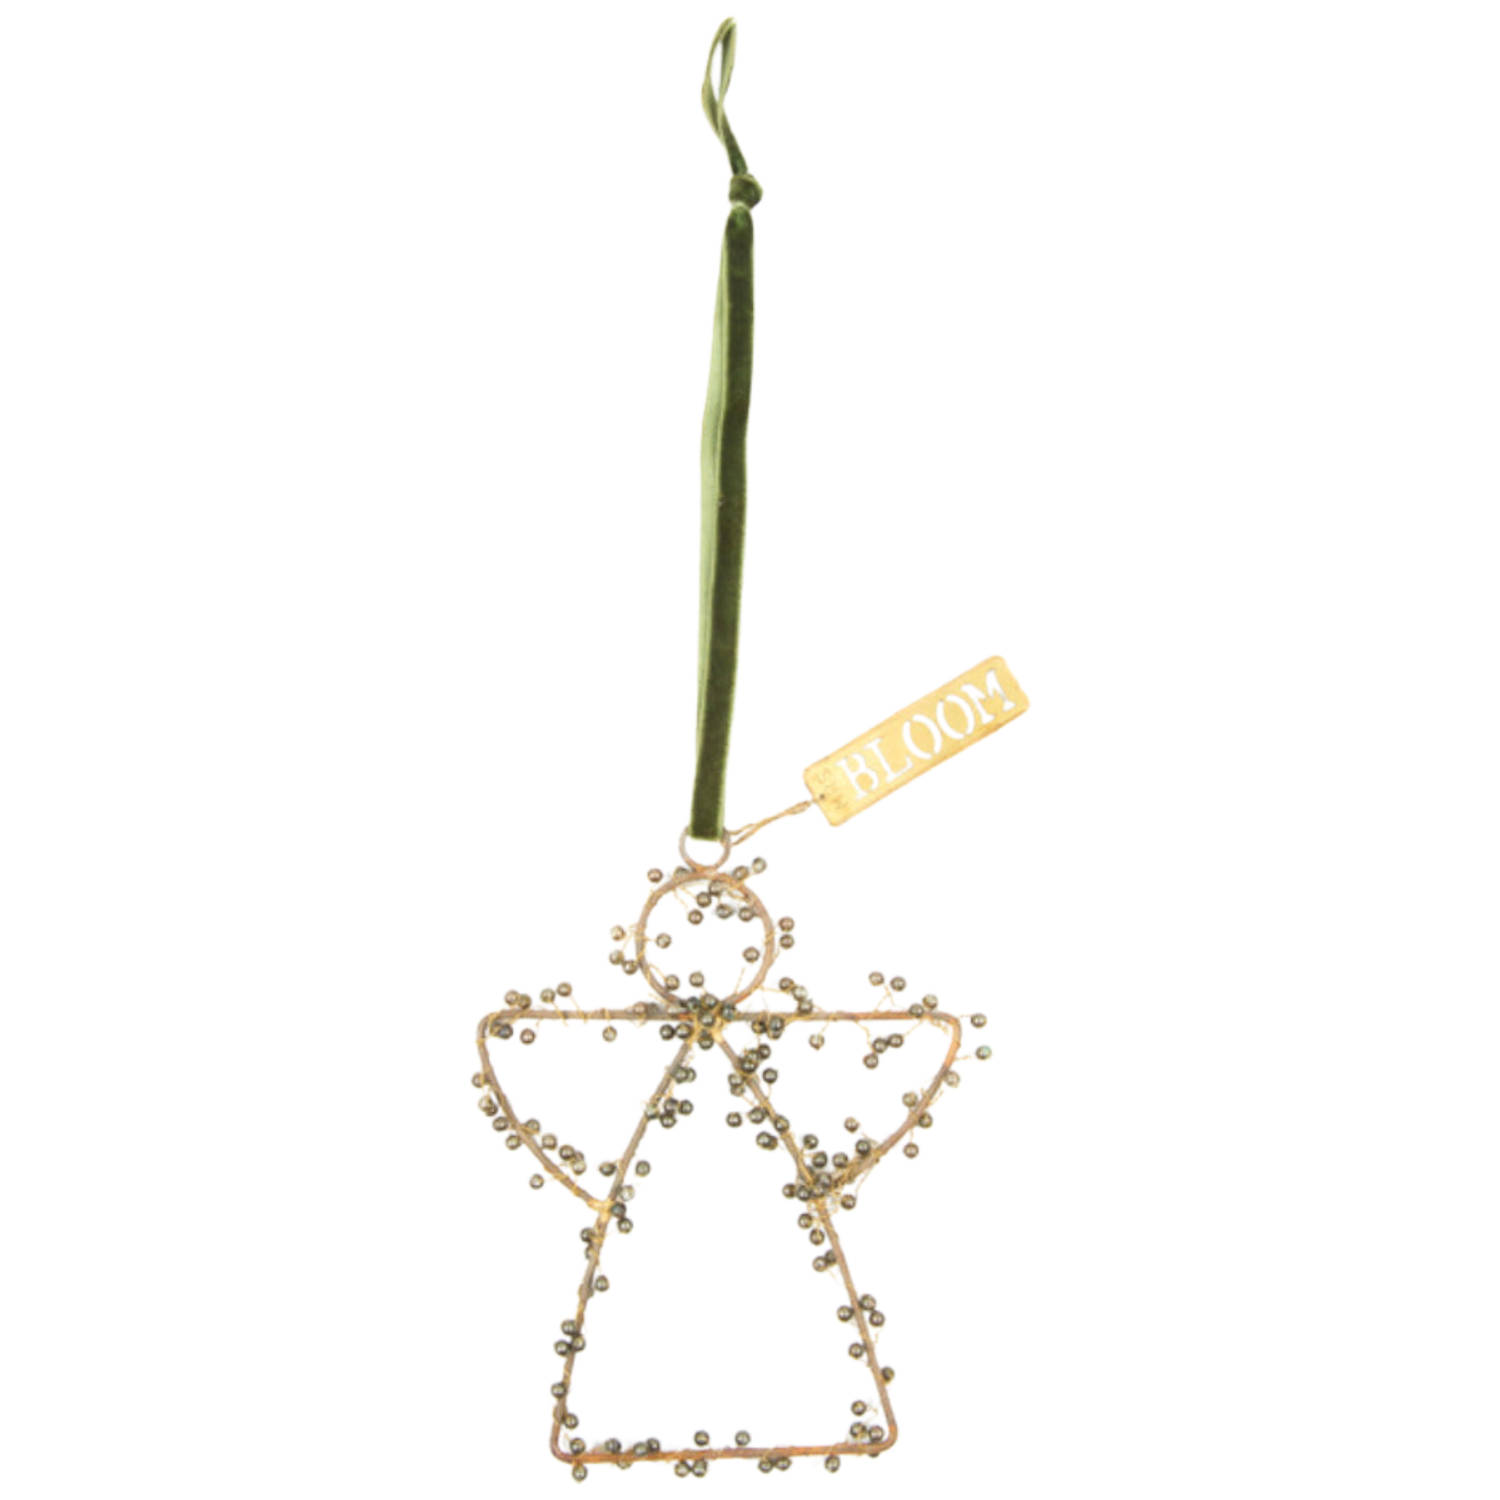 Mrs bloom ornament met kralen angel olive maat s